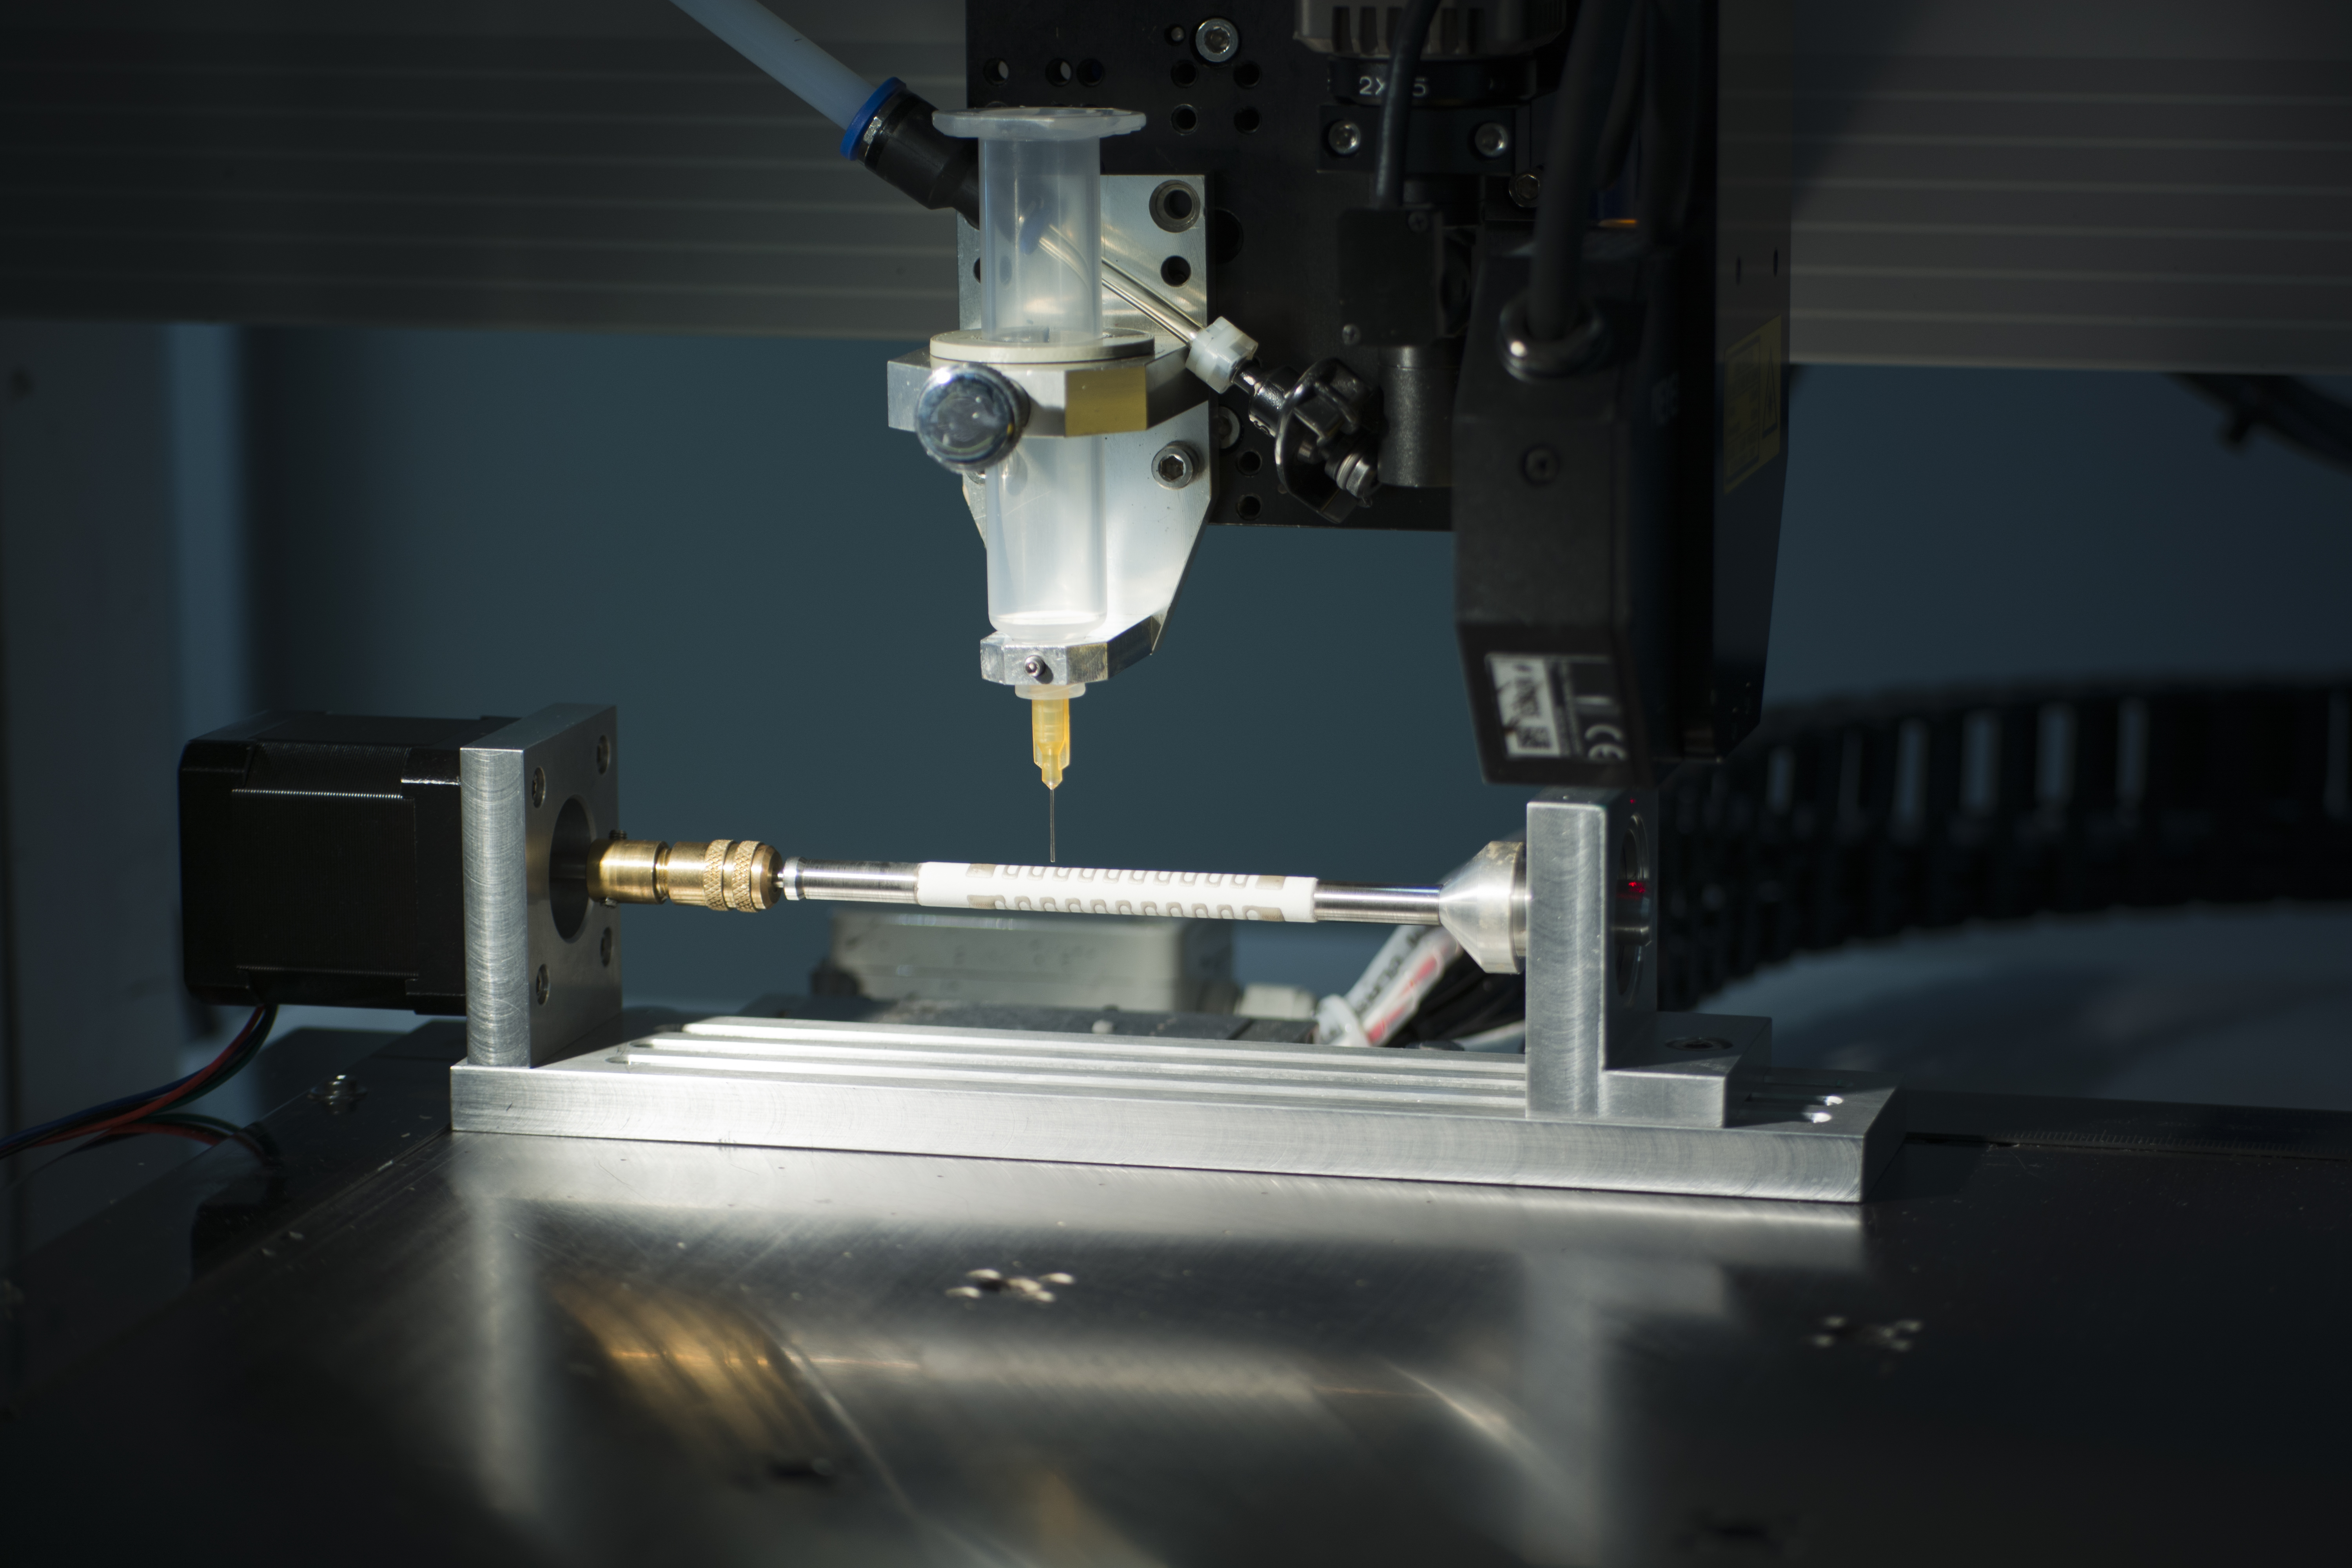 Das Fraunhofer IWS hat für Airbus besondere zuverlässige dünne Keramik-Silber-Heizungen entwickelt. Diese lassen sich auf Rohre und andere kompliziert geformte Bauteile nahtlos und automatisiert aufdrucken.